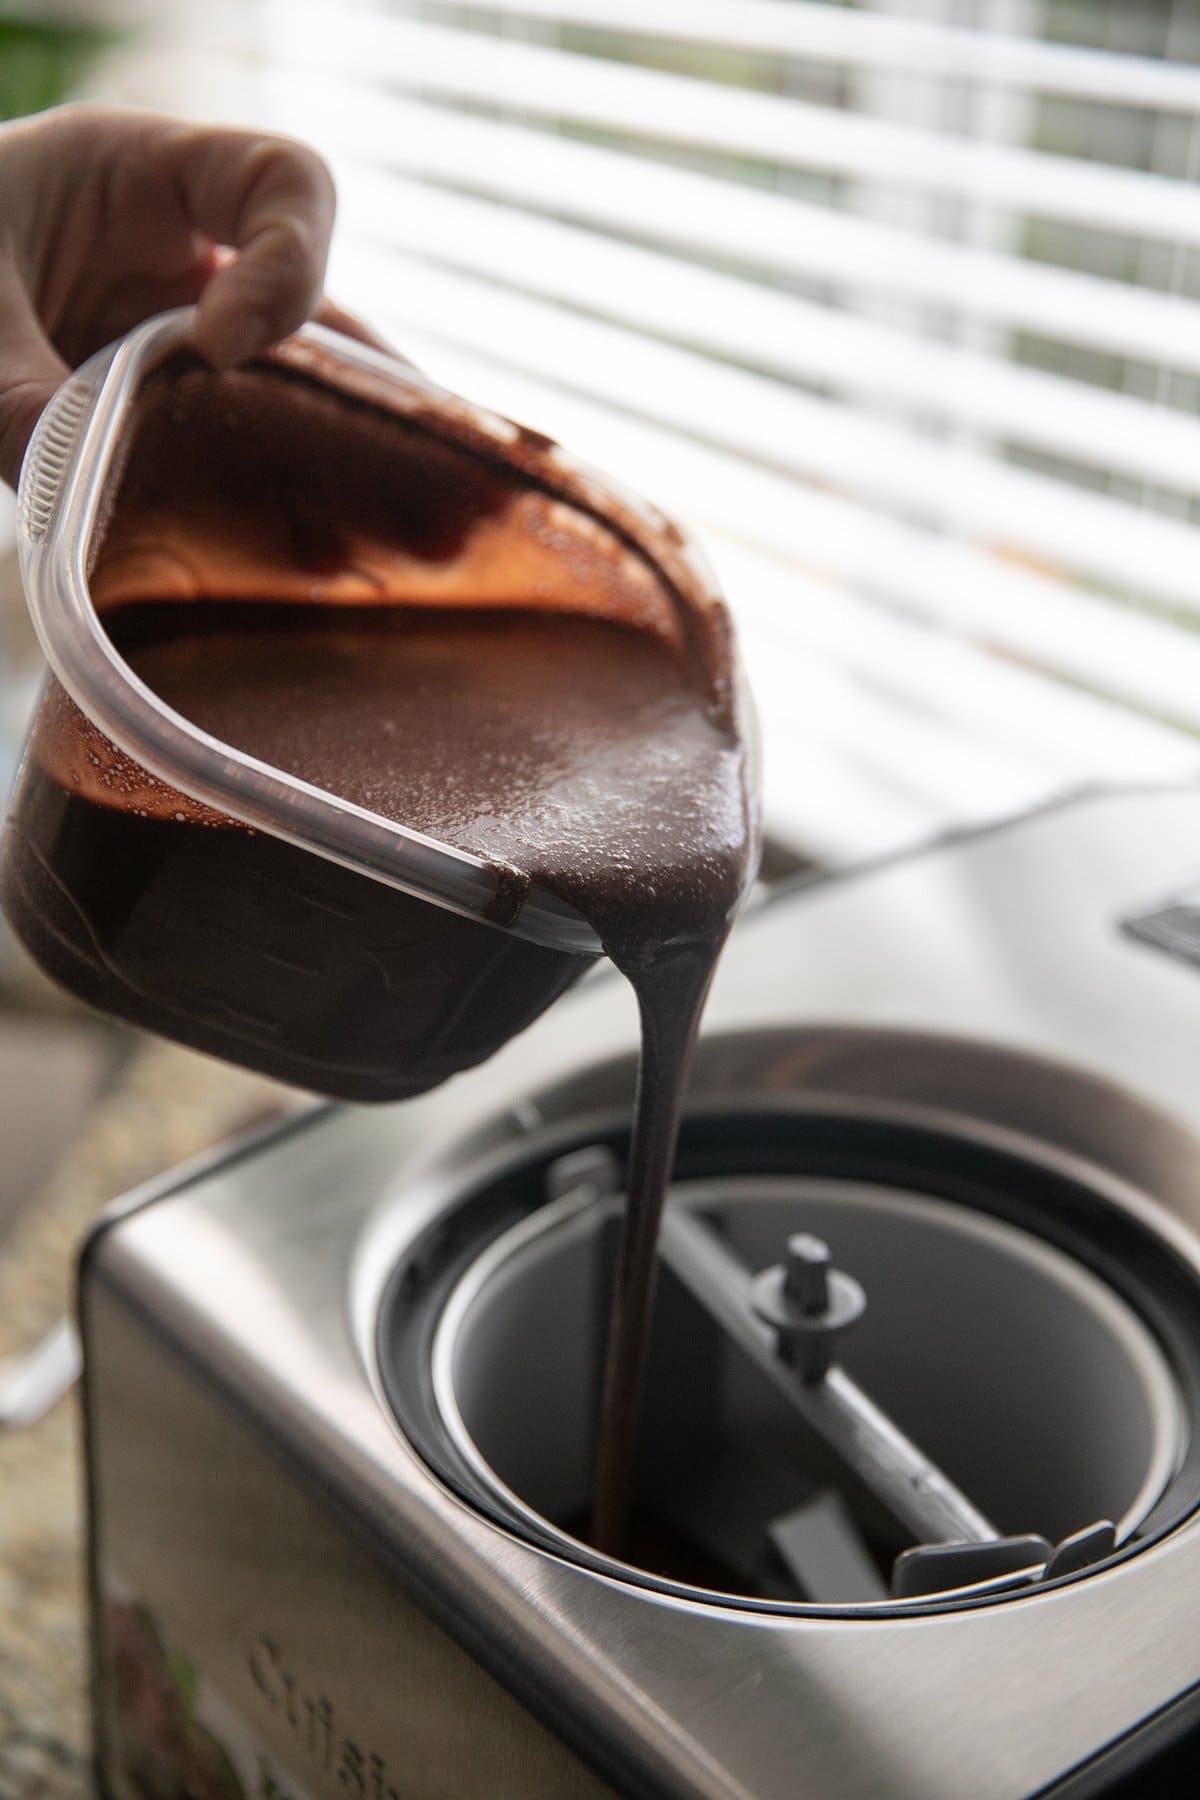 Tuang dasar cokelat ke dalam mesin es krim